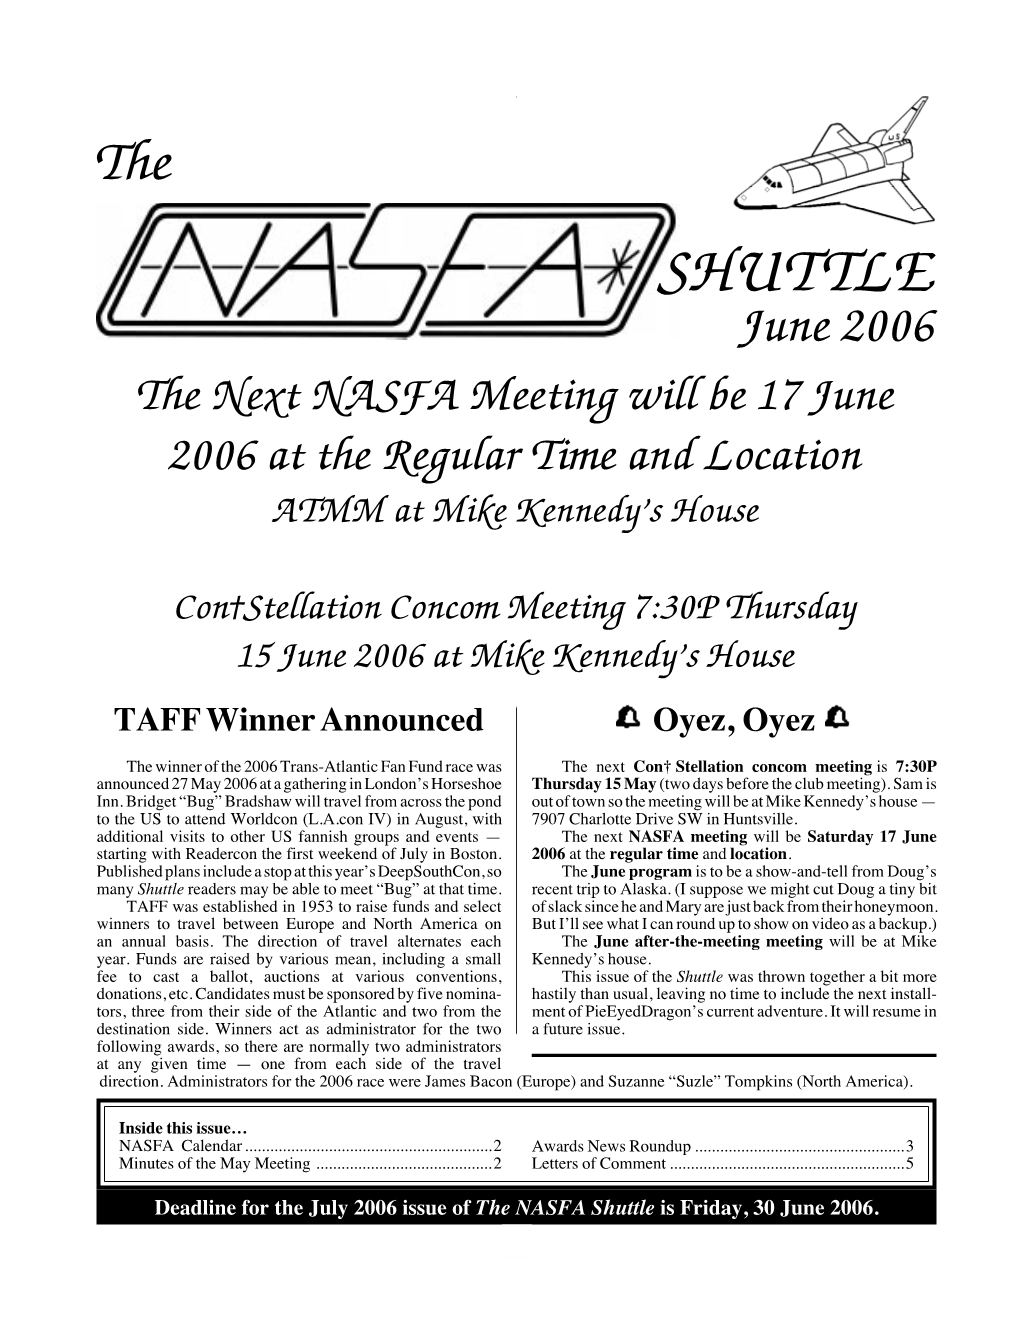 NASFA 'Shuttle' Jun 2006